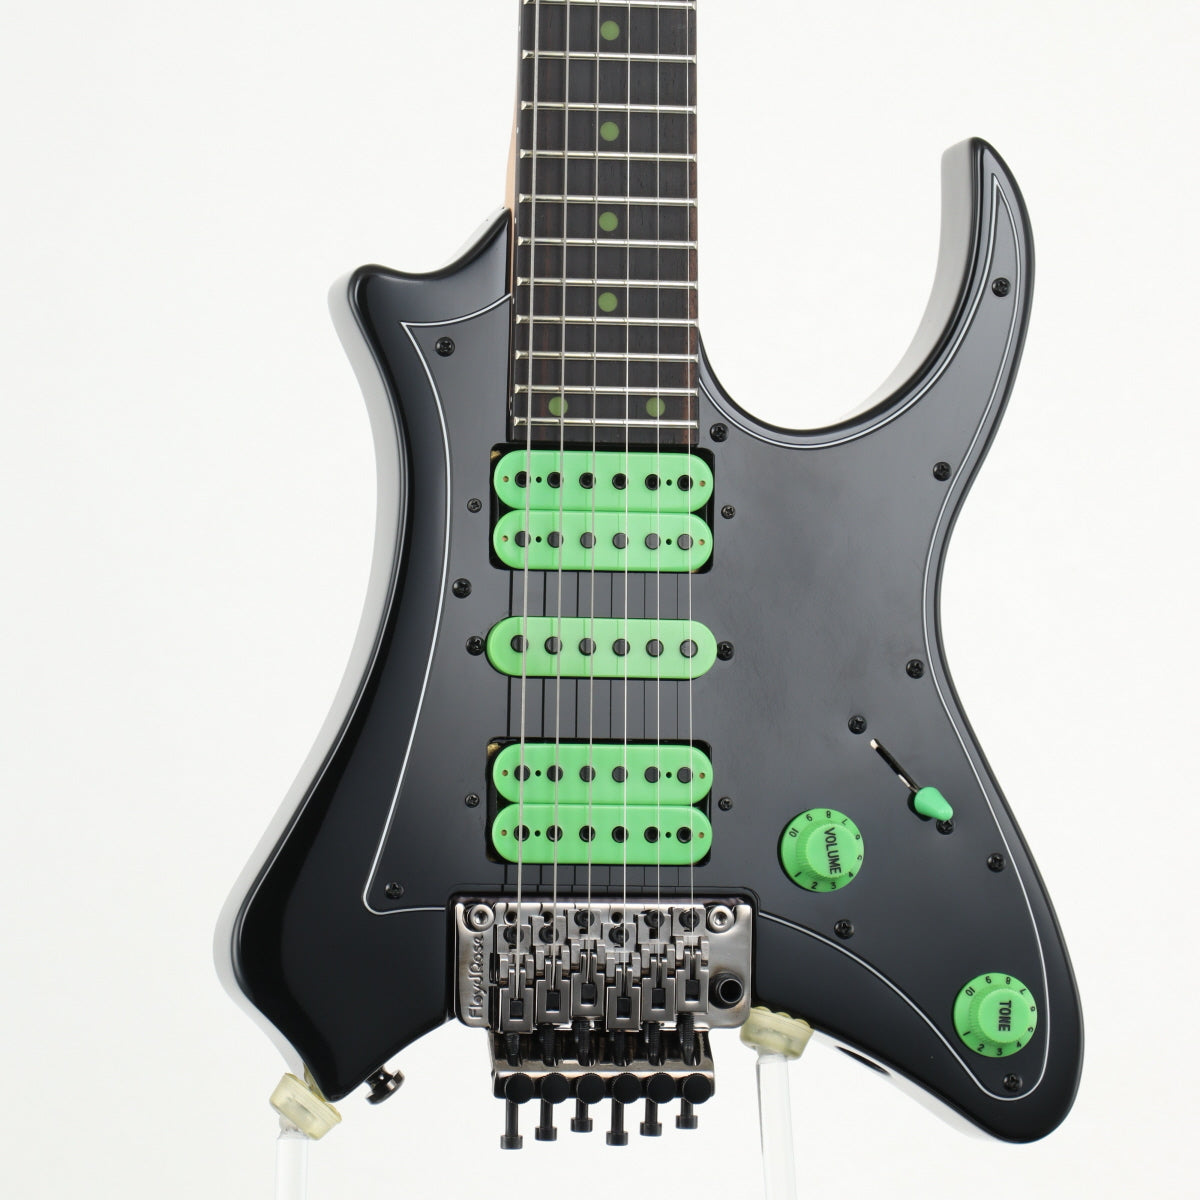 [SN V88X000388] USED Traveler Guitar / Vaibrant Deluxe V88X Cosmic Black [11]